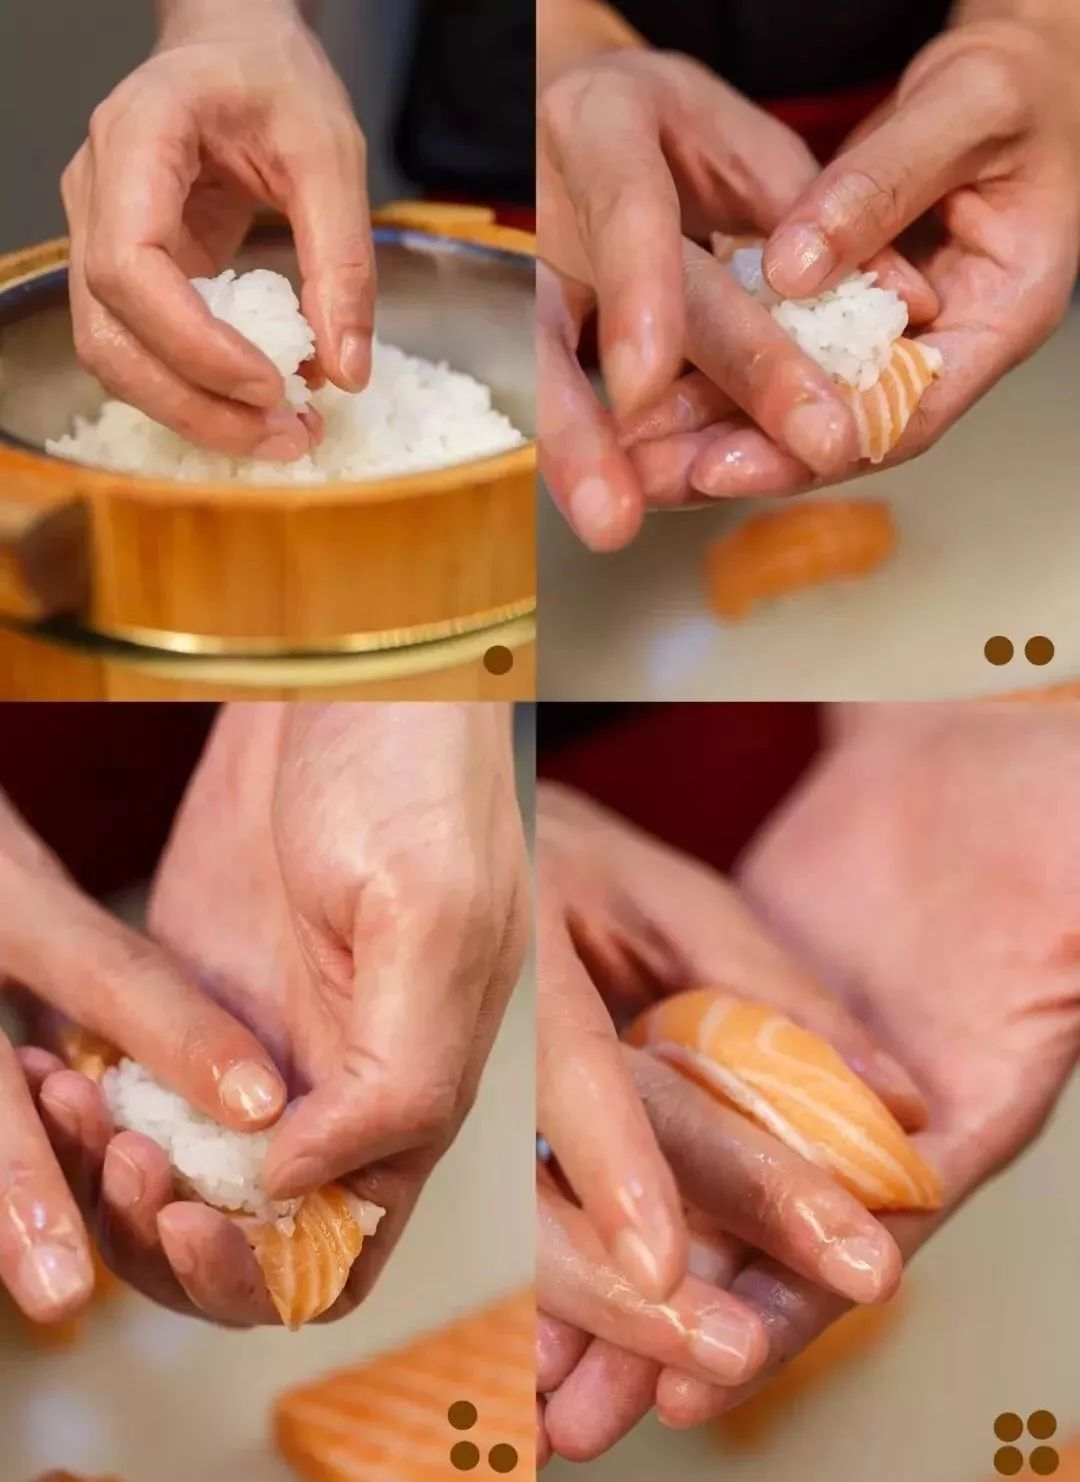 精湛的寿司手握手法师傅的功夫掌控于指间▼每个寿司师傅娴熟的技能